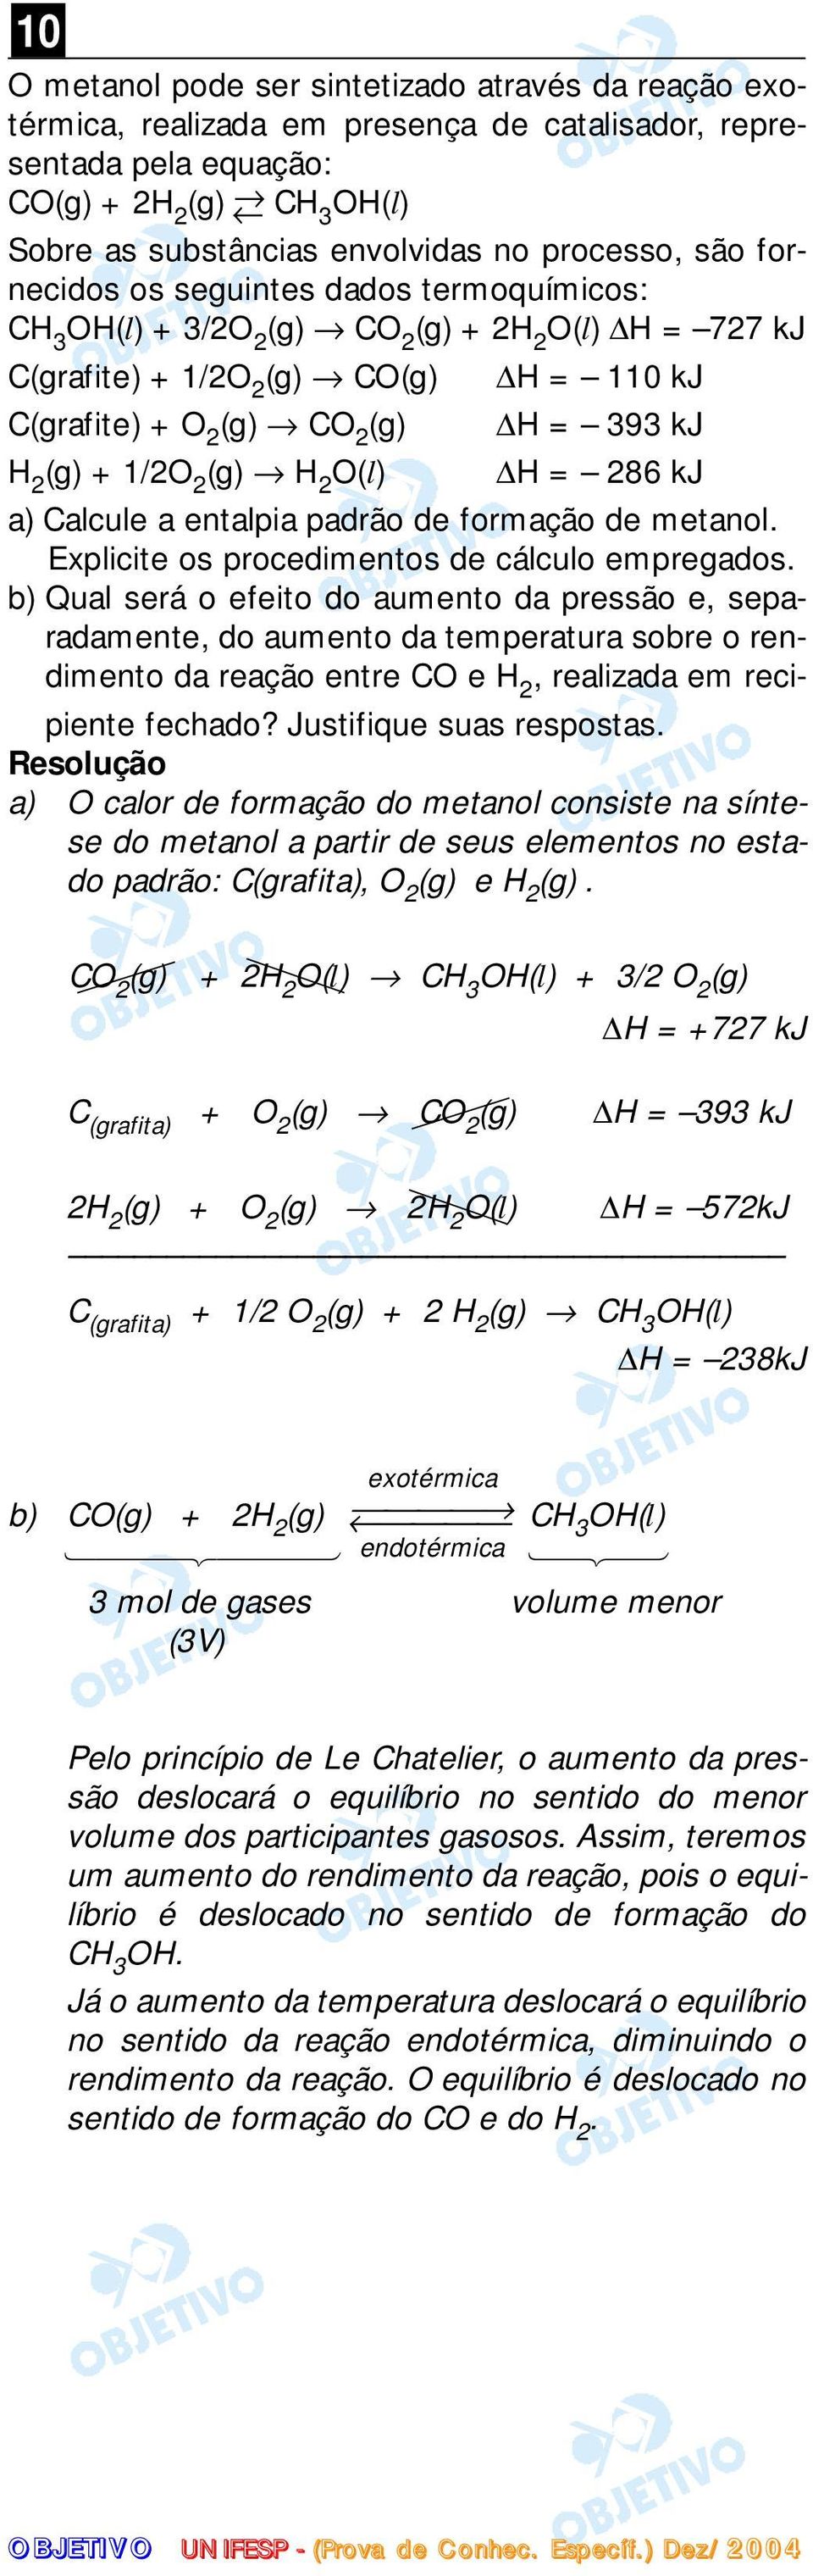 2 (g) + 1/2O 2 (g) H 2 O(l) H = 286 kj a) Calcule a entalpia padrão de formação de metanol. Explicite os procedimentos de cálculo empregados.